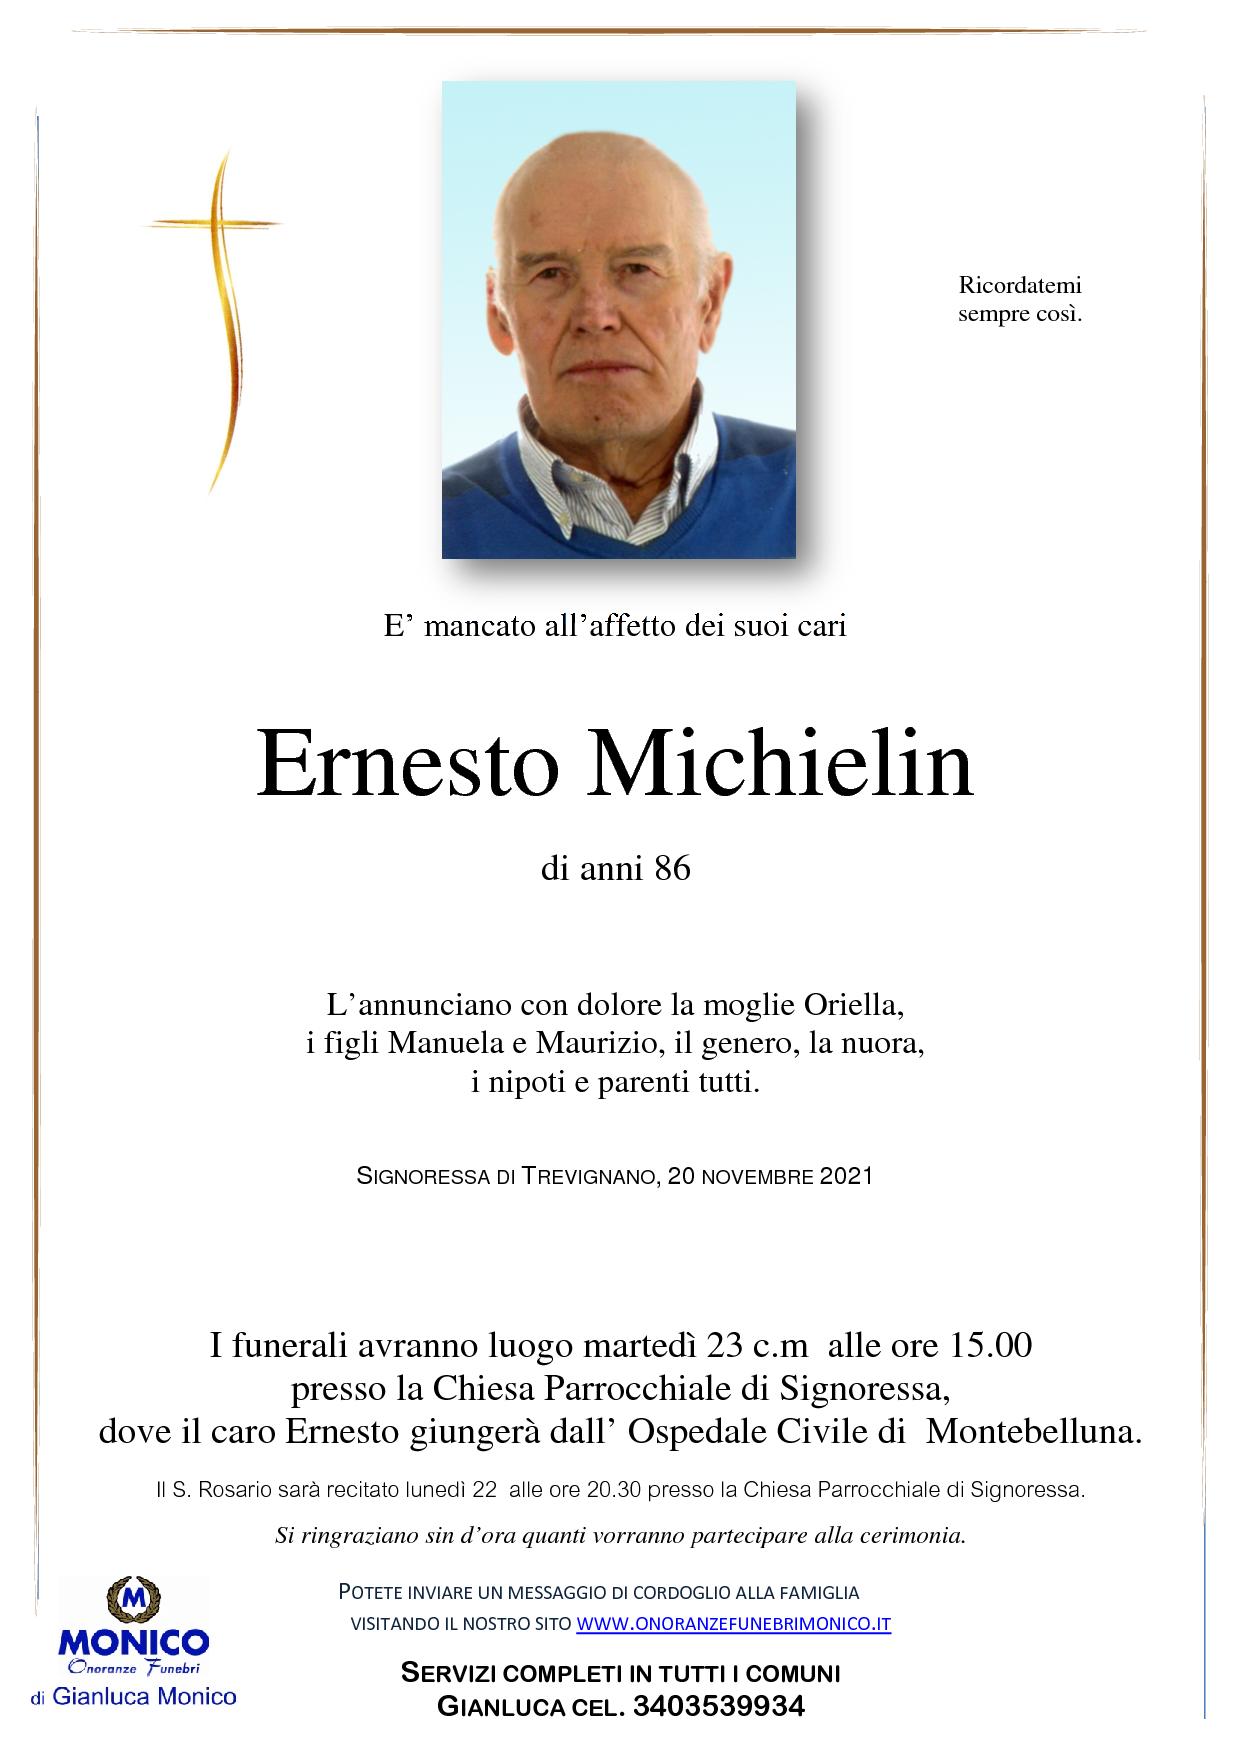 Michielin Ernesto